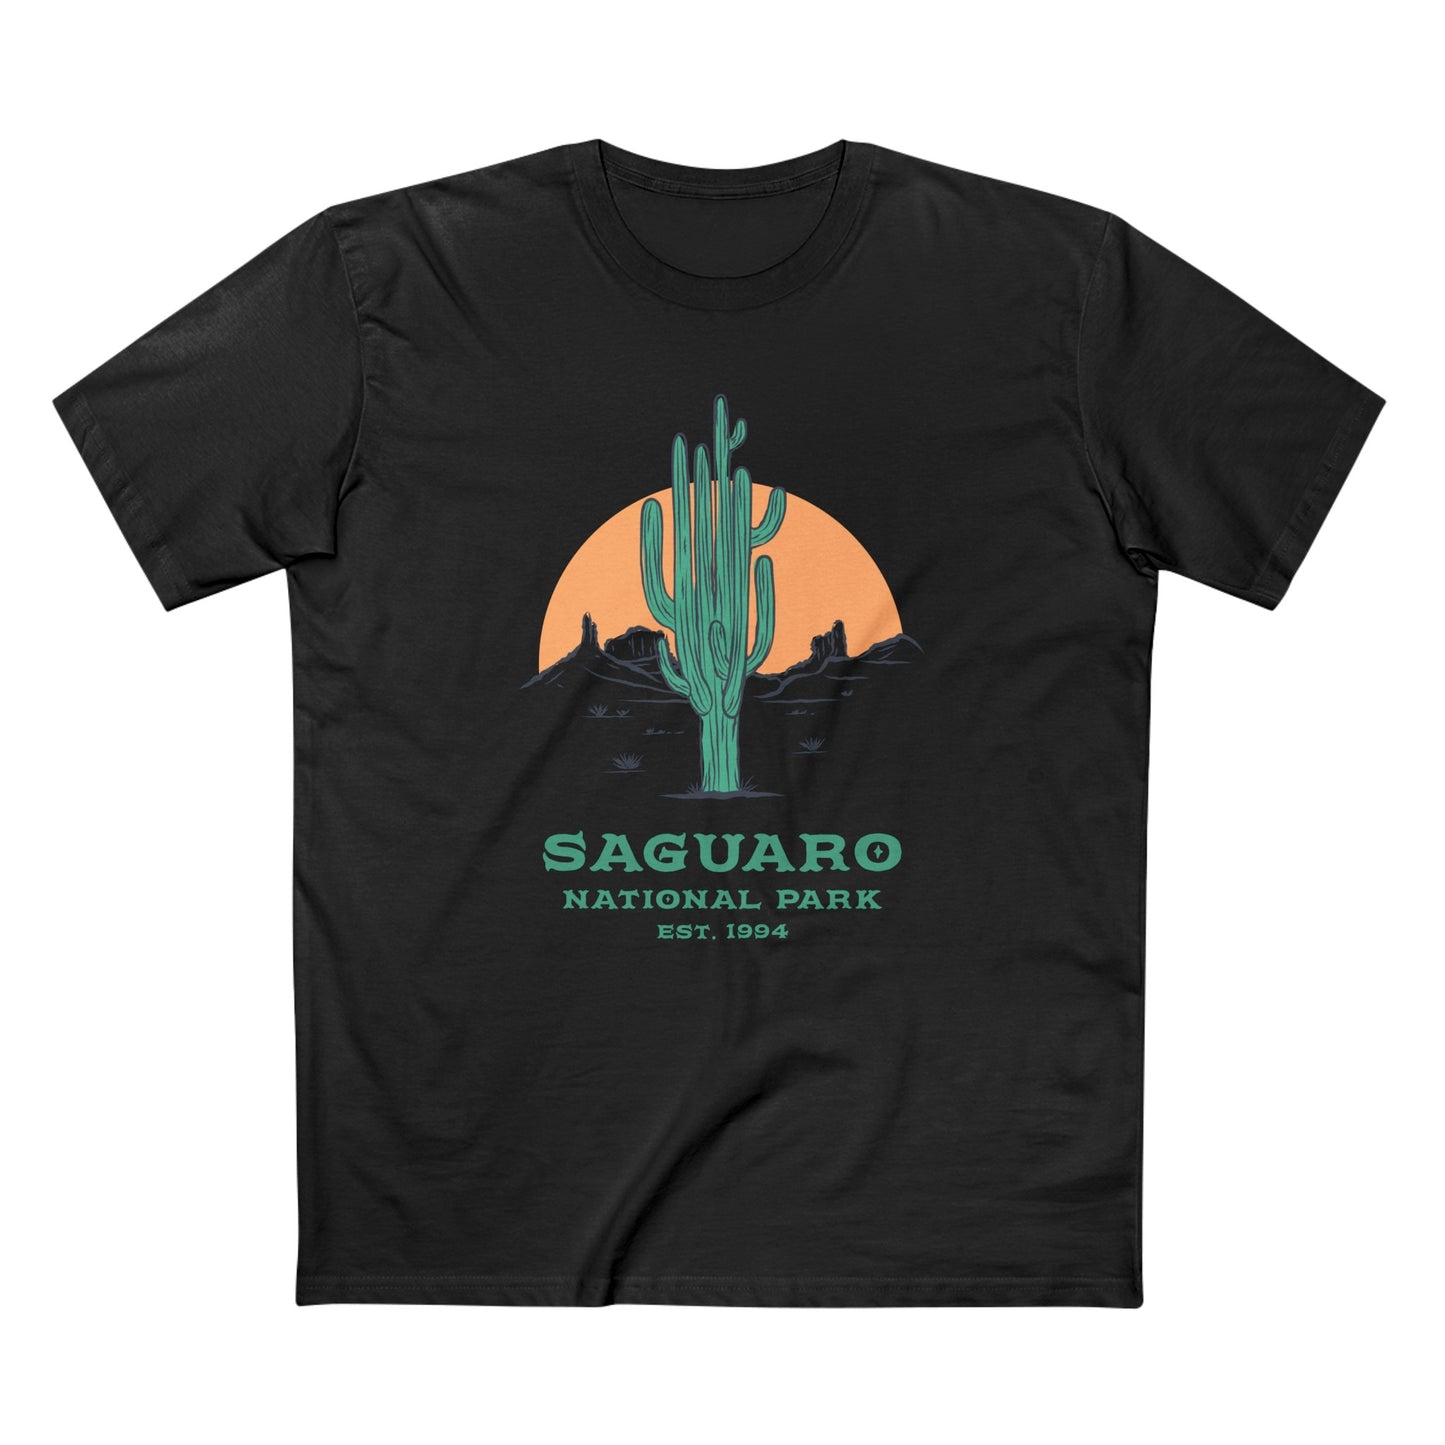 Saguaro National Park T-Shirt - Saguaro Cactus